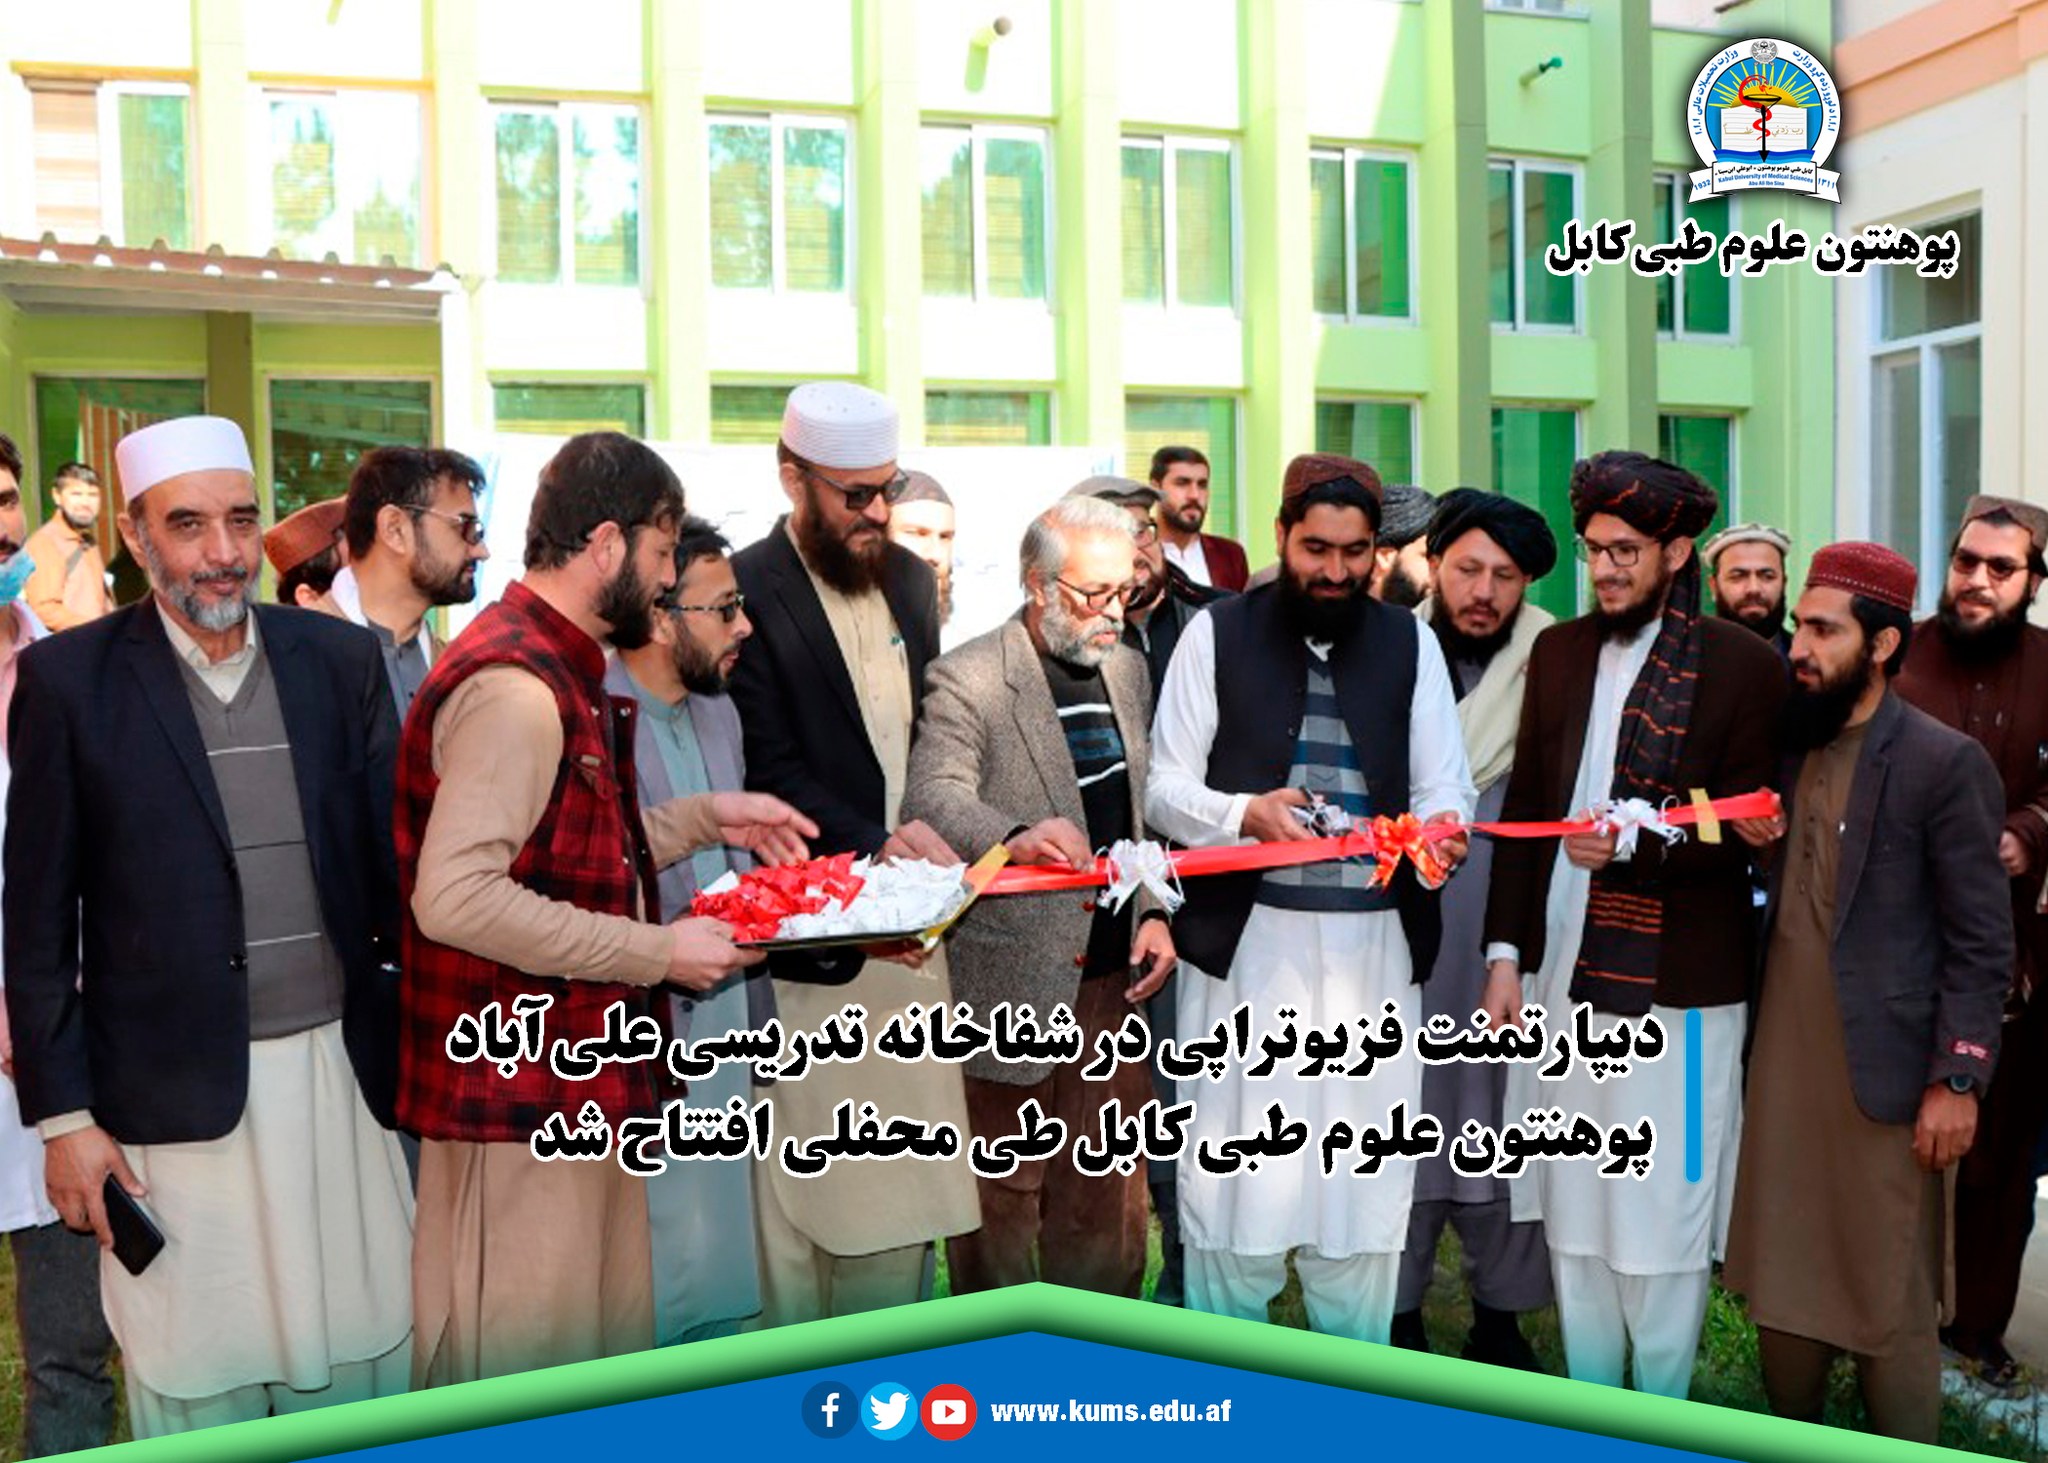 دیپارتمنت فزیوتراپی در شفاخانه تدریسی علی آباد پوهنتون علوم طبی کابل طی محفلی افتتاح شد